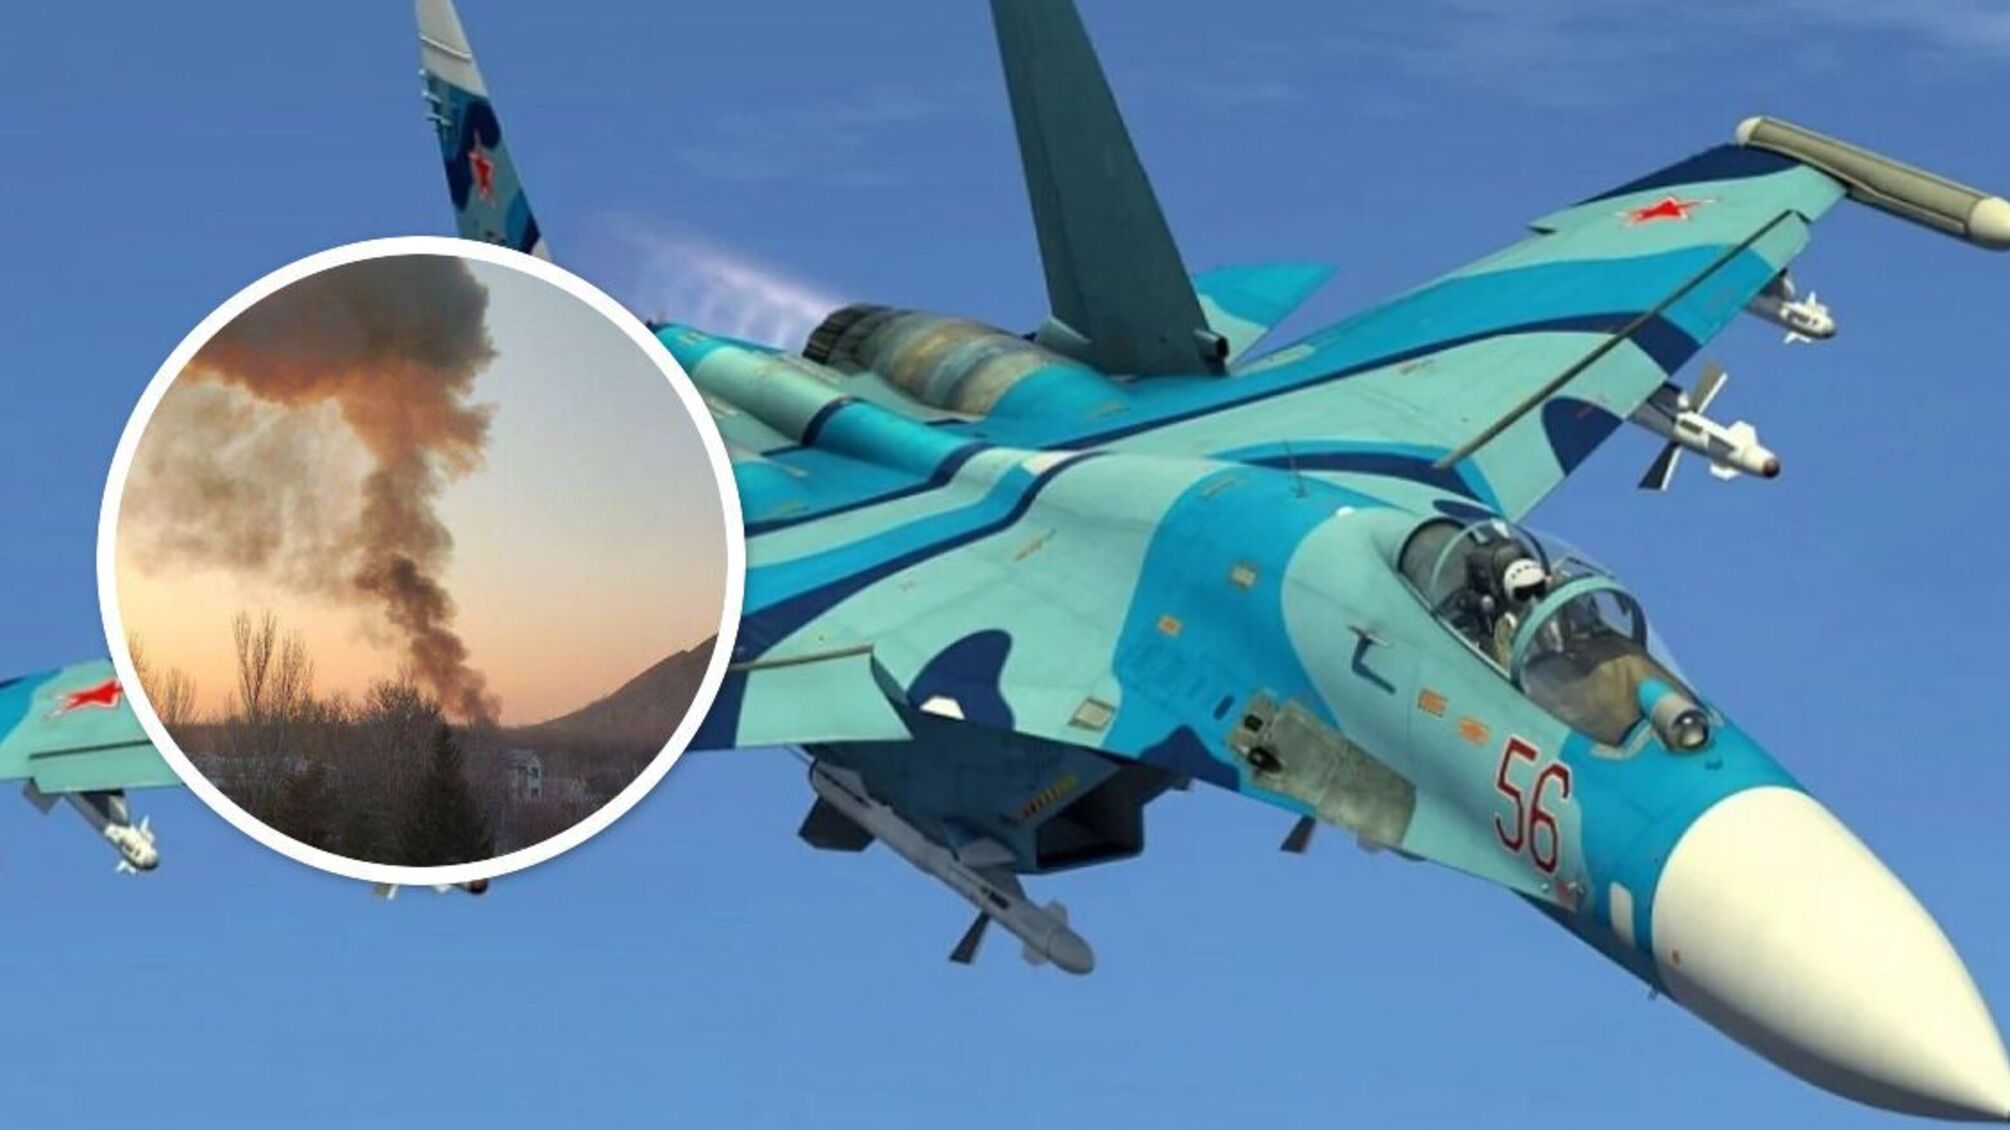 Над Донецьком збито військовий літак - що відомо (фото, відео)